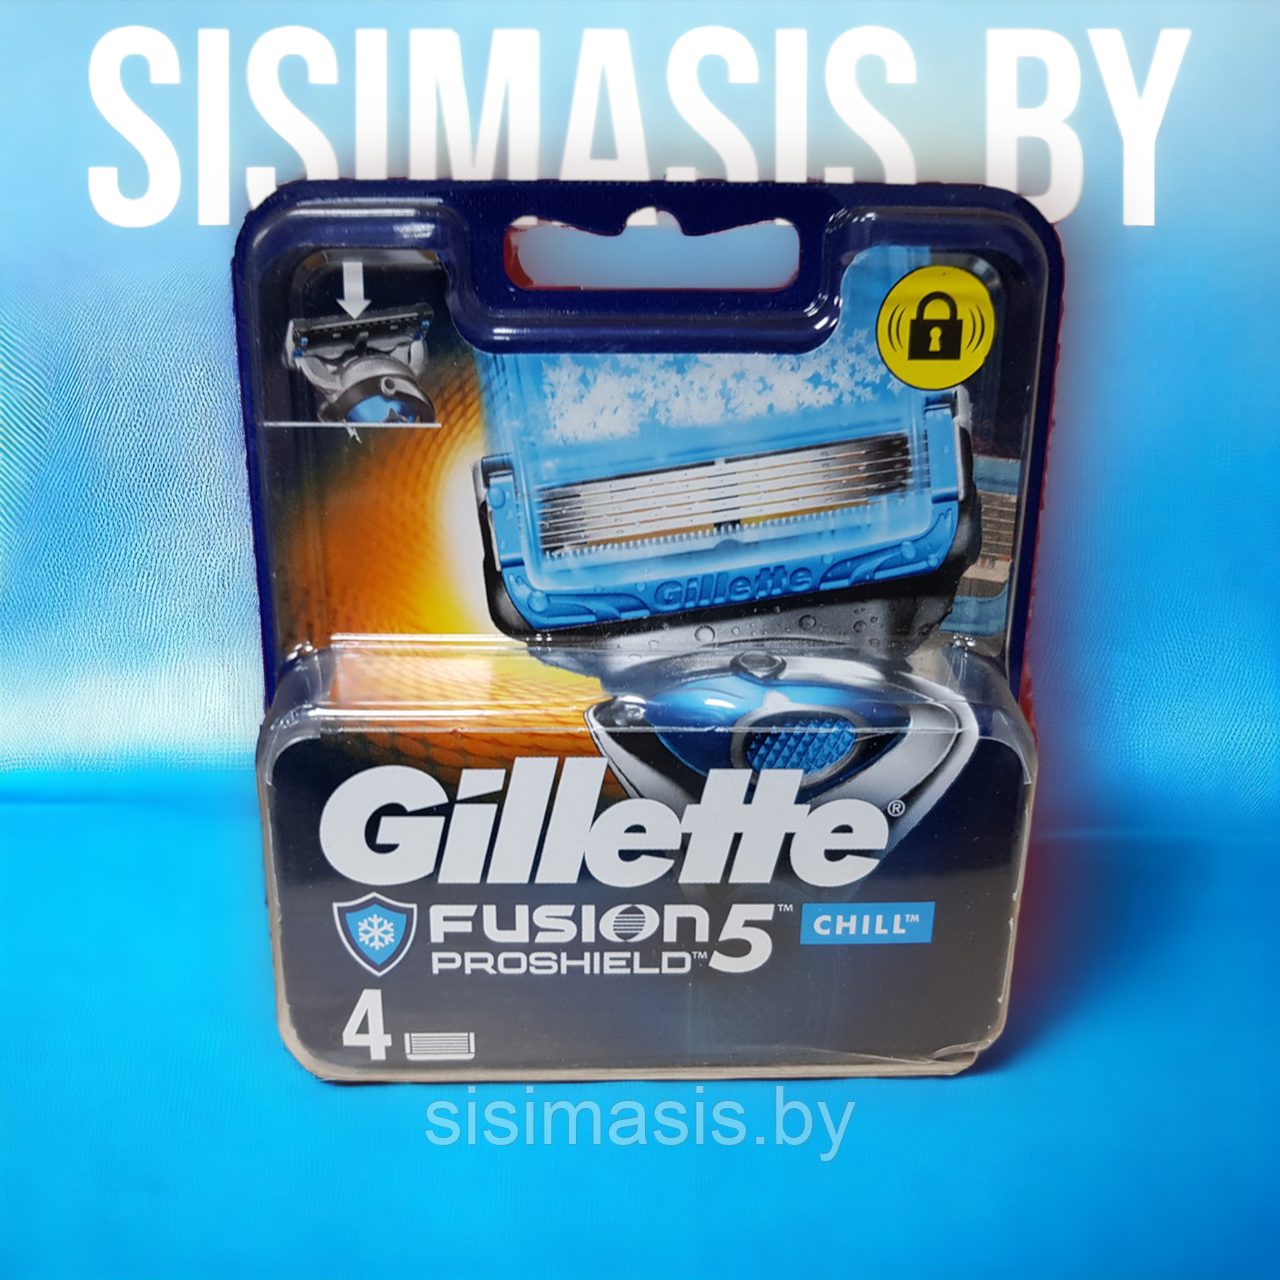 Сменные кассеты для бритья Gillette fusion5 proshield chill/оригинал, 4 шт.